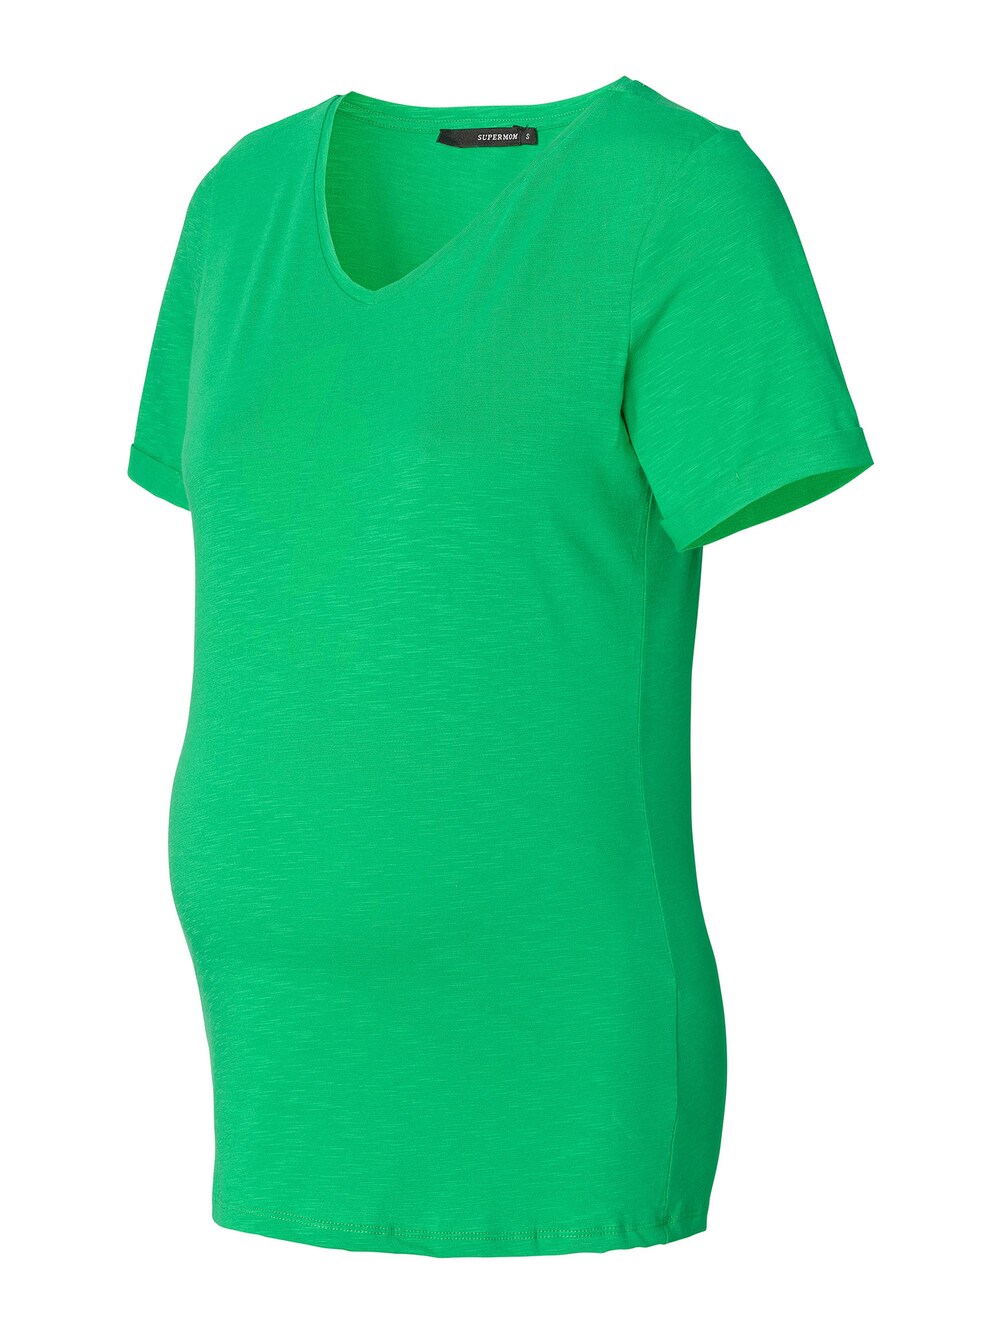 Рубашка Supermom Estero, трава зеленая рубашка yoek трава зеленая